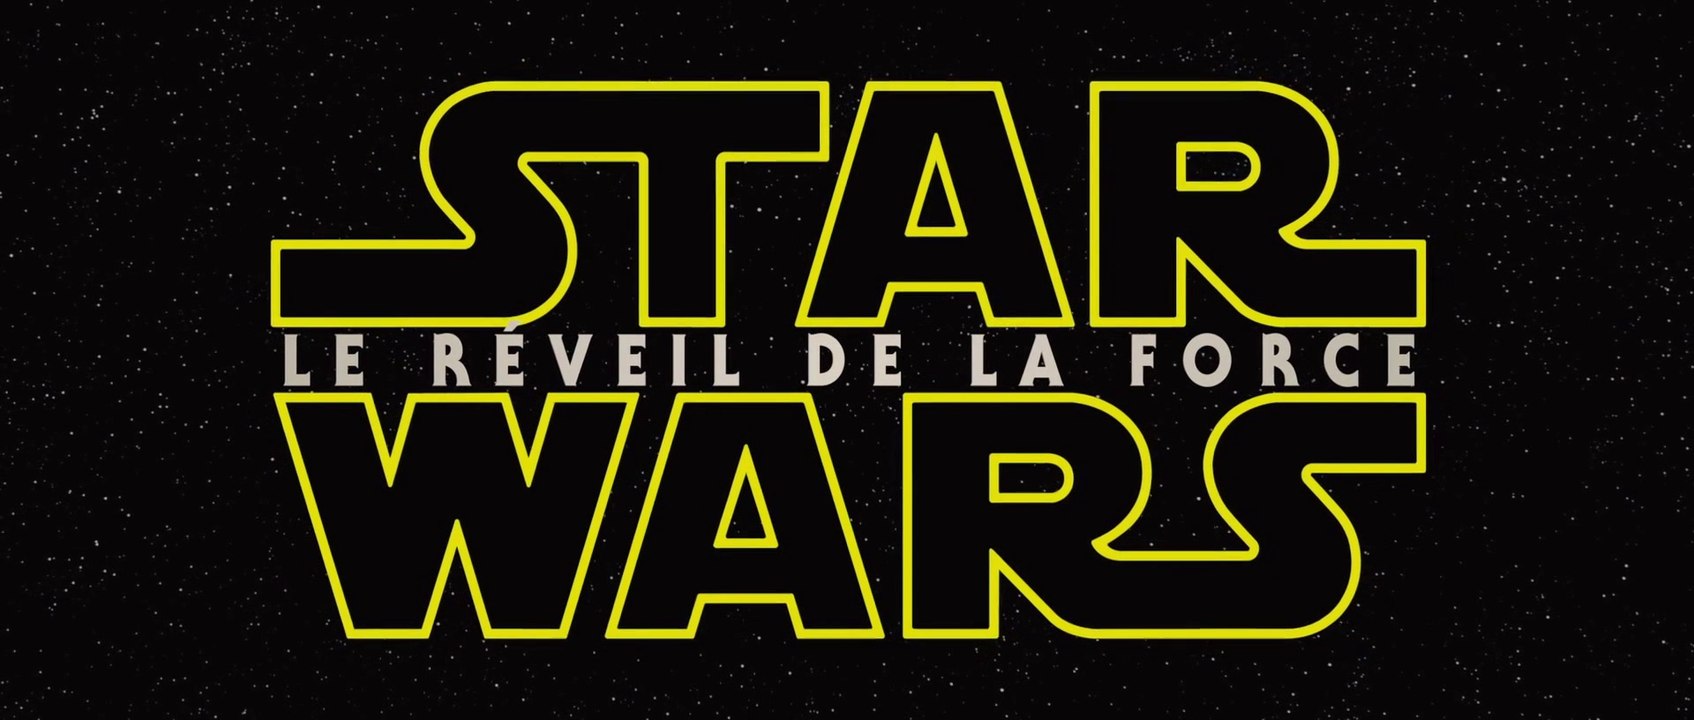 Star Wars Episode VII - The Force Awakens : bande annonce teaser VOST HD 1080